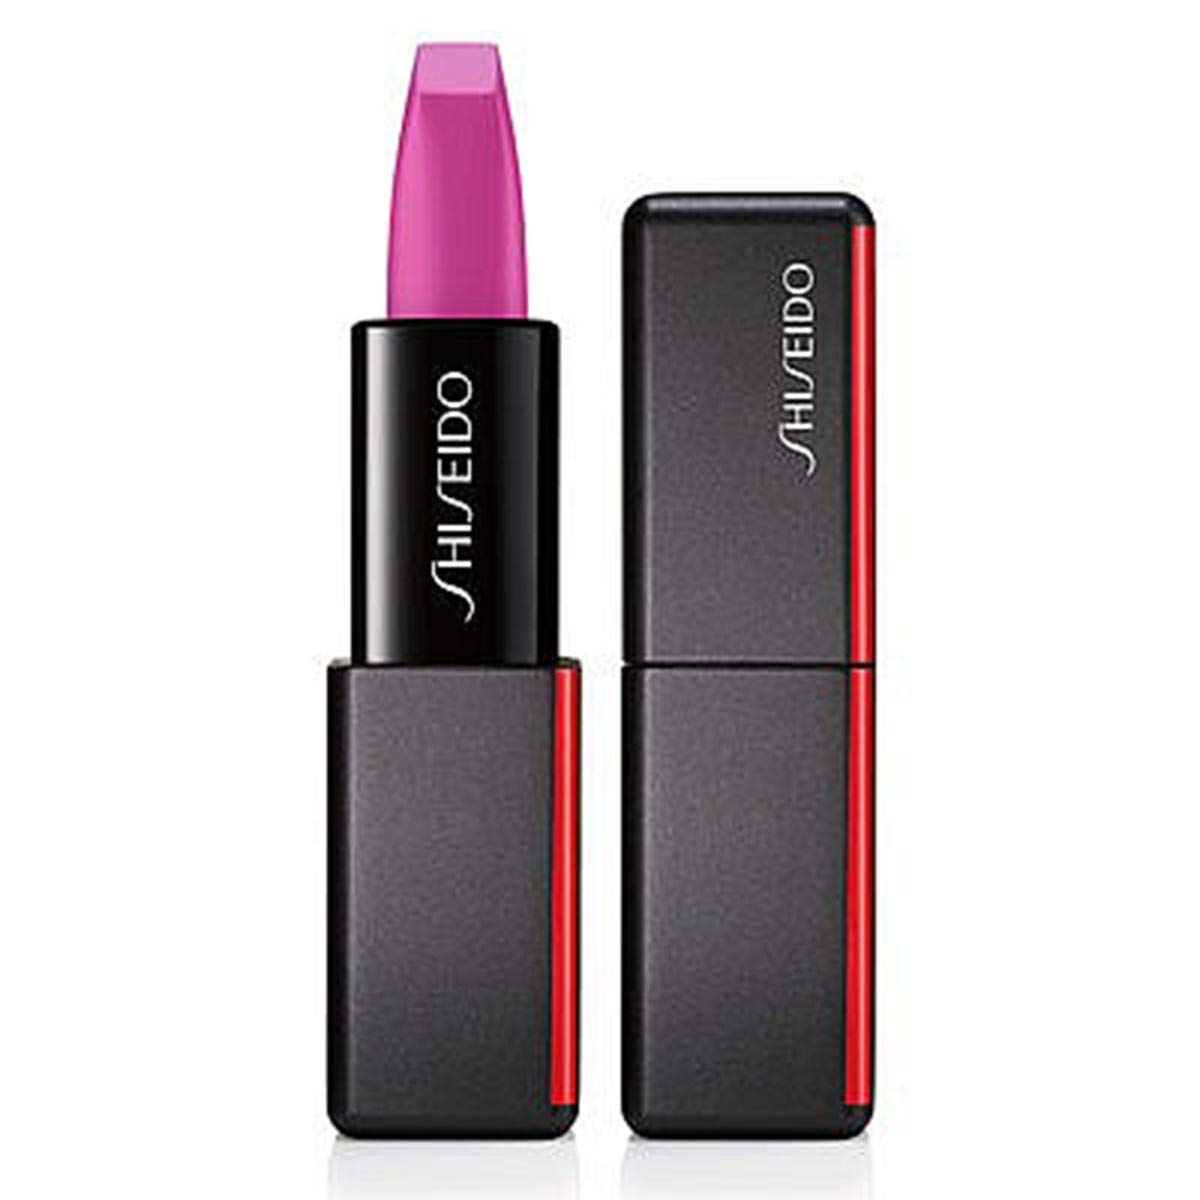 Shiseido Modern Matte Powder Lipstick, 519 Fuchsia Fetish, 1 x 4 g